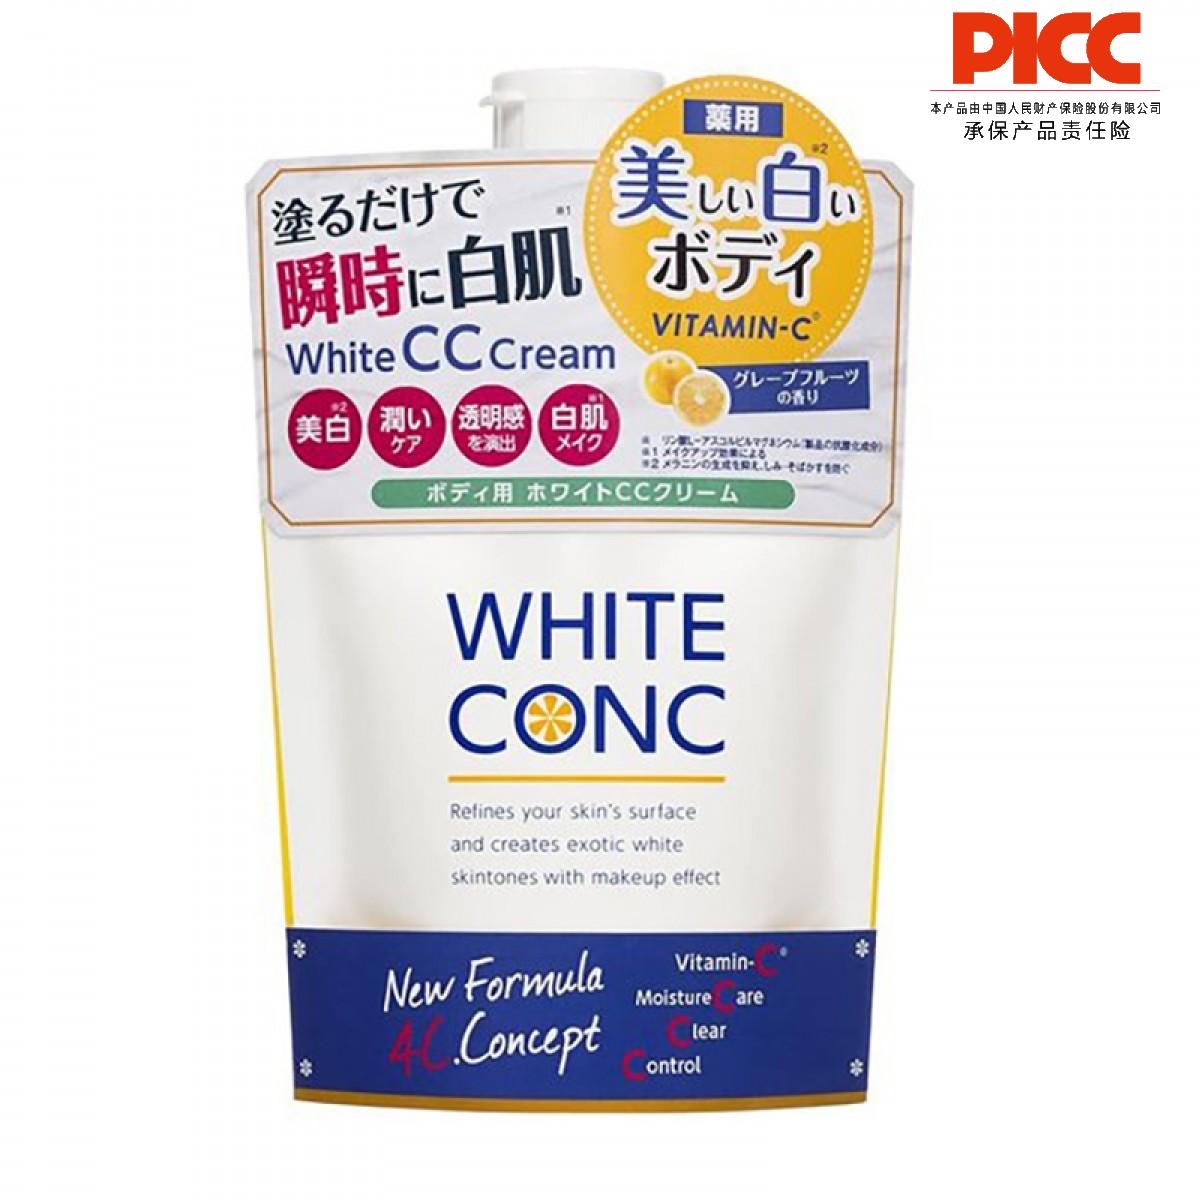 【保稅】日本WHITECONCVC全身提亮美白身體CC霜身體乳200ml